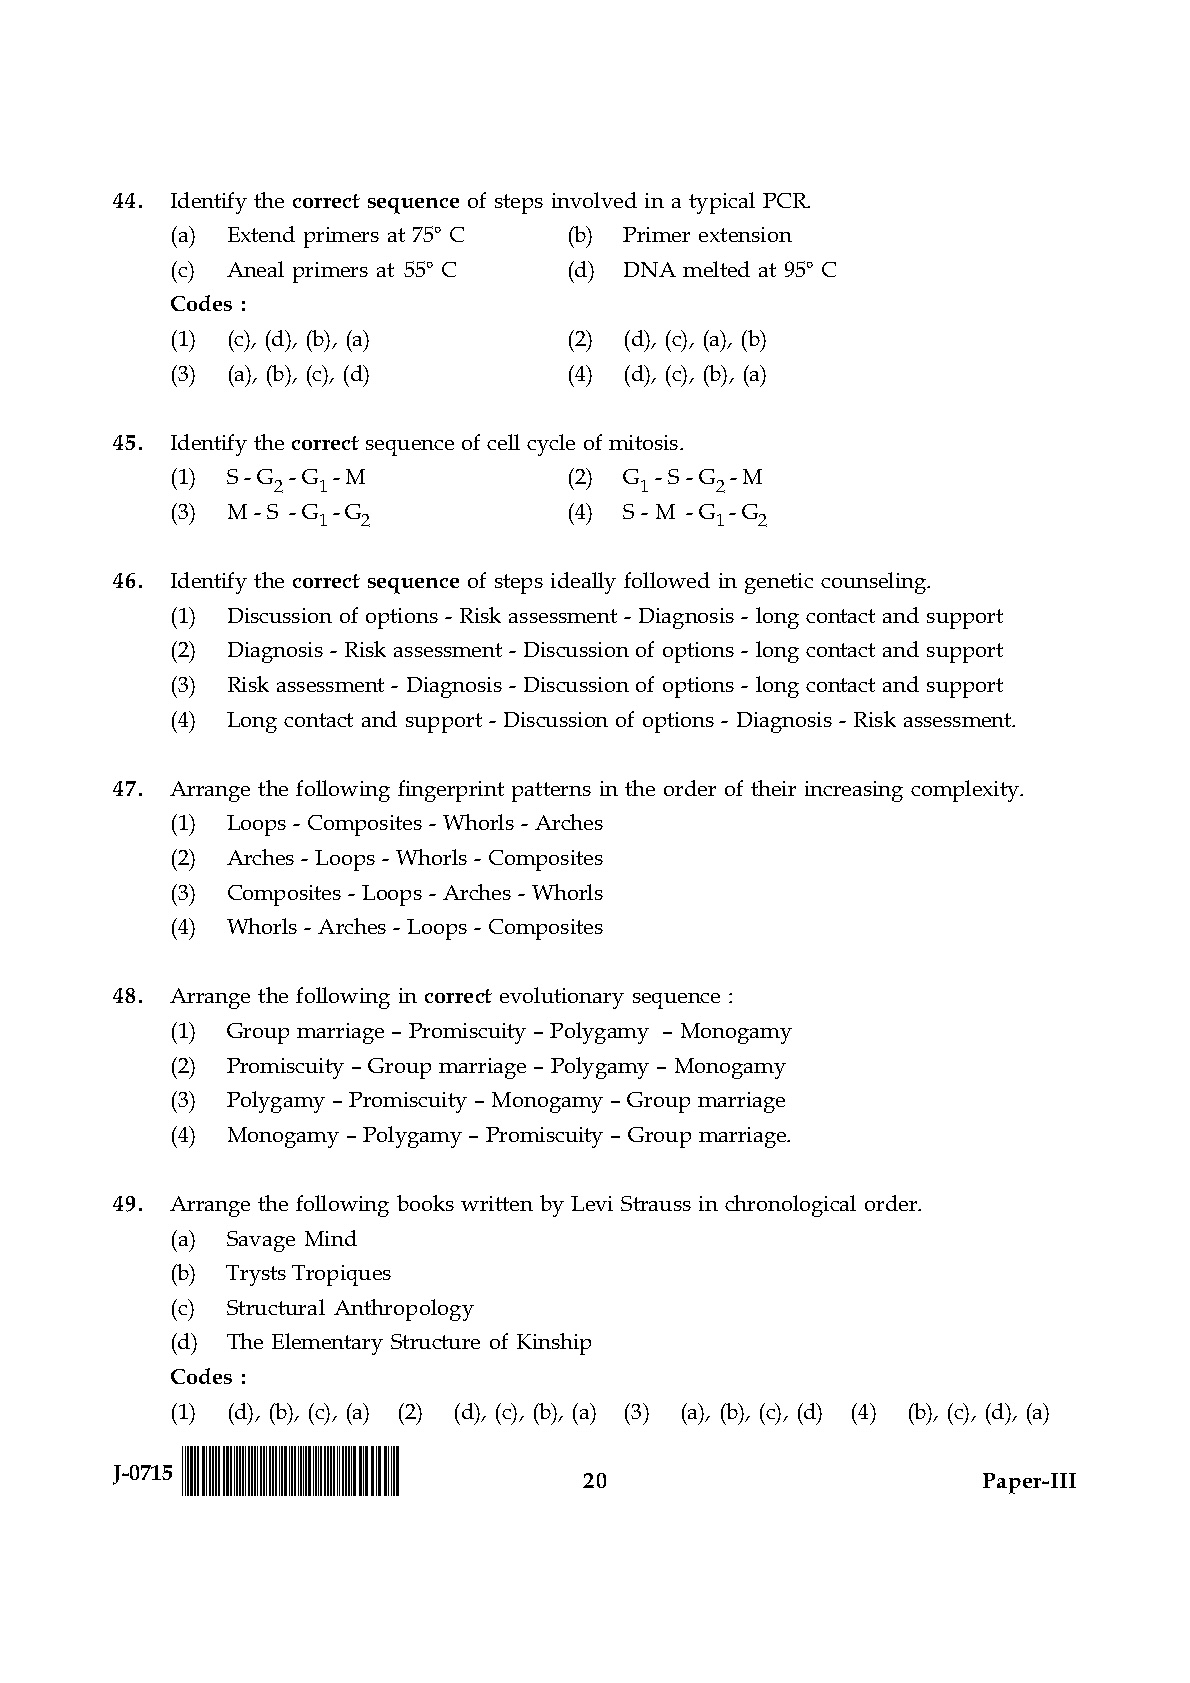 UGC NET Anthropology Question Paper III June 2015 20